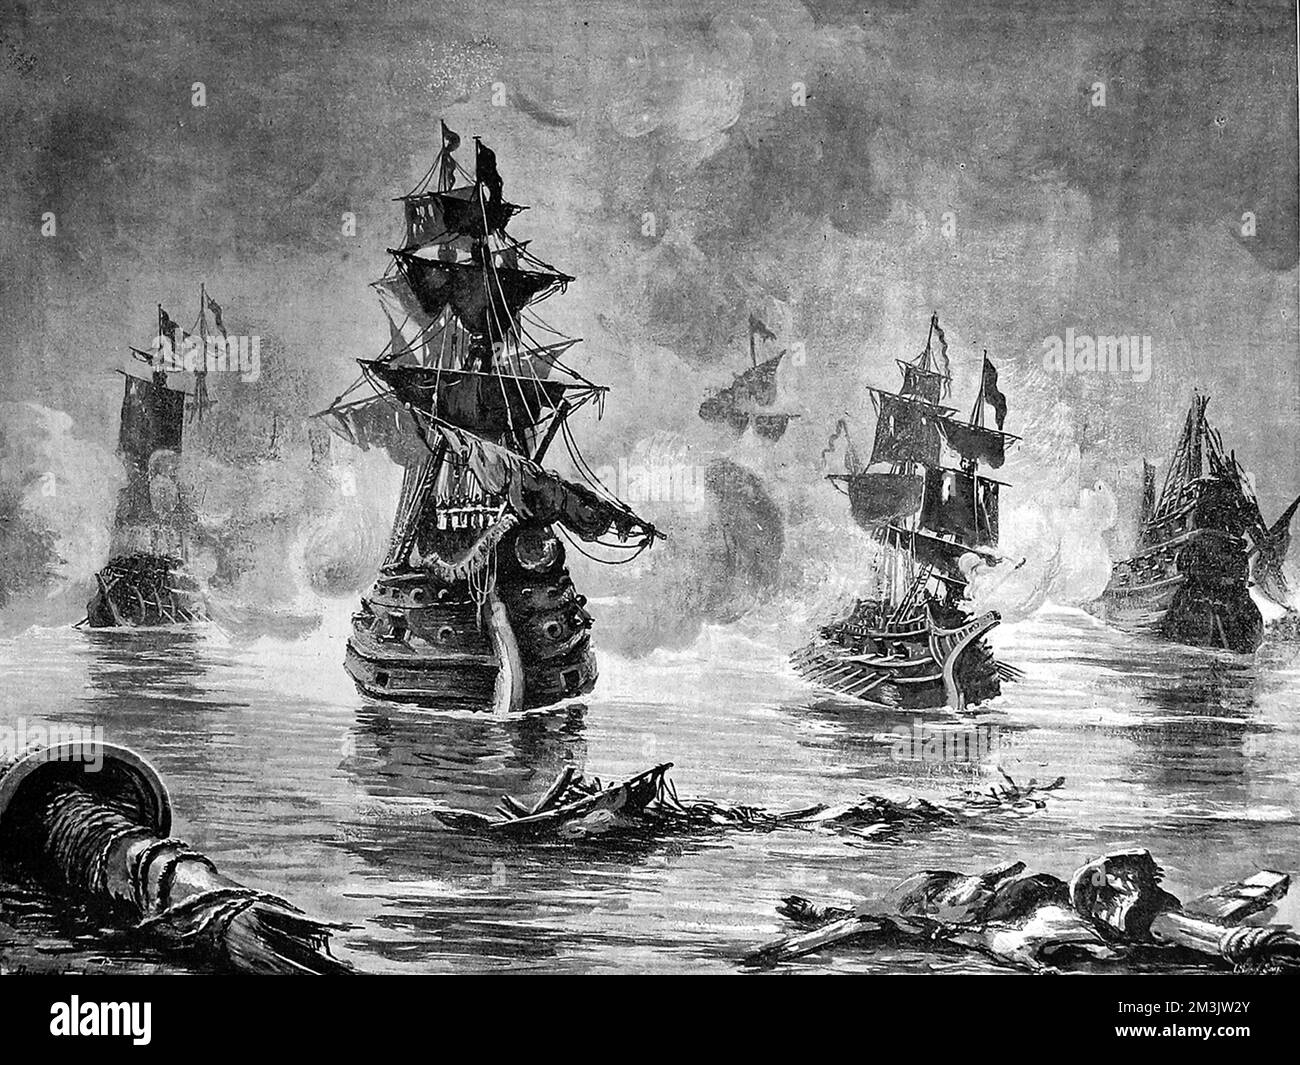 Schlacht im Ärmelkanal zwischen Elisabeths Flotte und der spanischen Armada von König Philip II Auf diesem Bild sind offenbar mehrere englische Galeonen oder Galeasen zu sehen, die das Feuer mit einer großen spanischen Galeone (in der Mitte) austauschen. Datum: 1588 Stockfoto